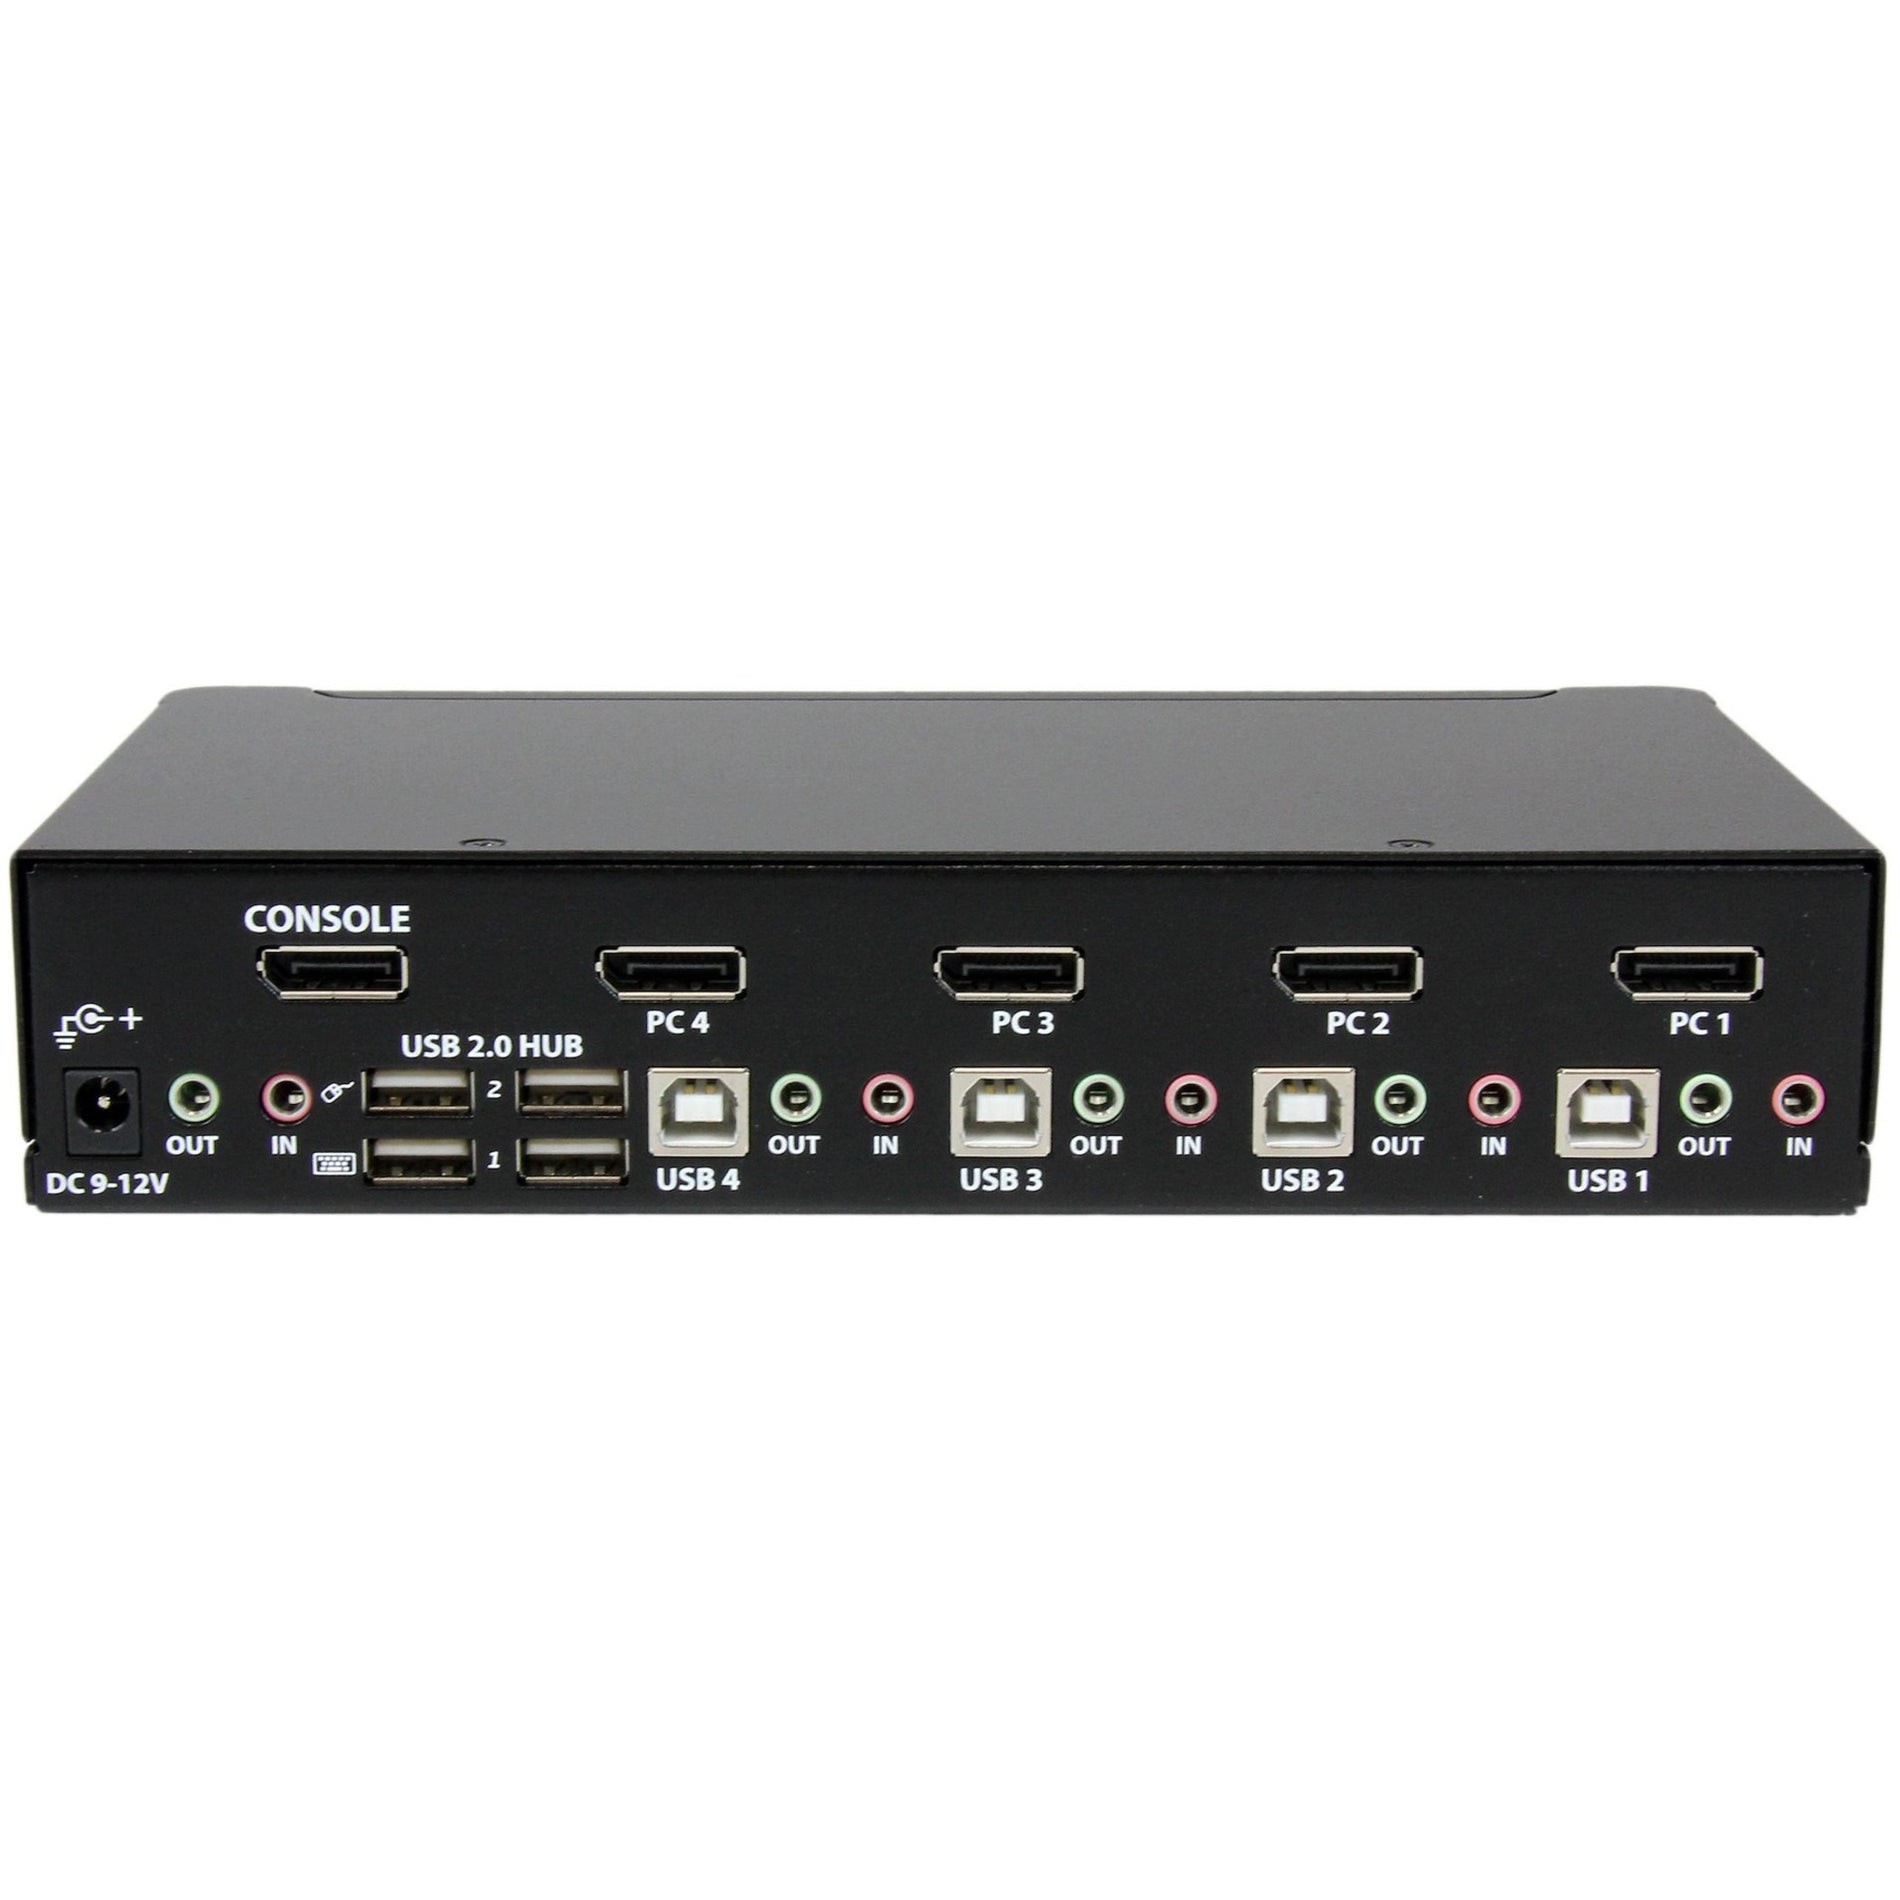 StarTech.com SV431DPUA 4 Port USB DisplayPort KVM Switch with Audio, WQXGA, 3840 x 2400, 3 Year Warranty